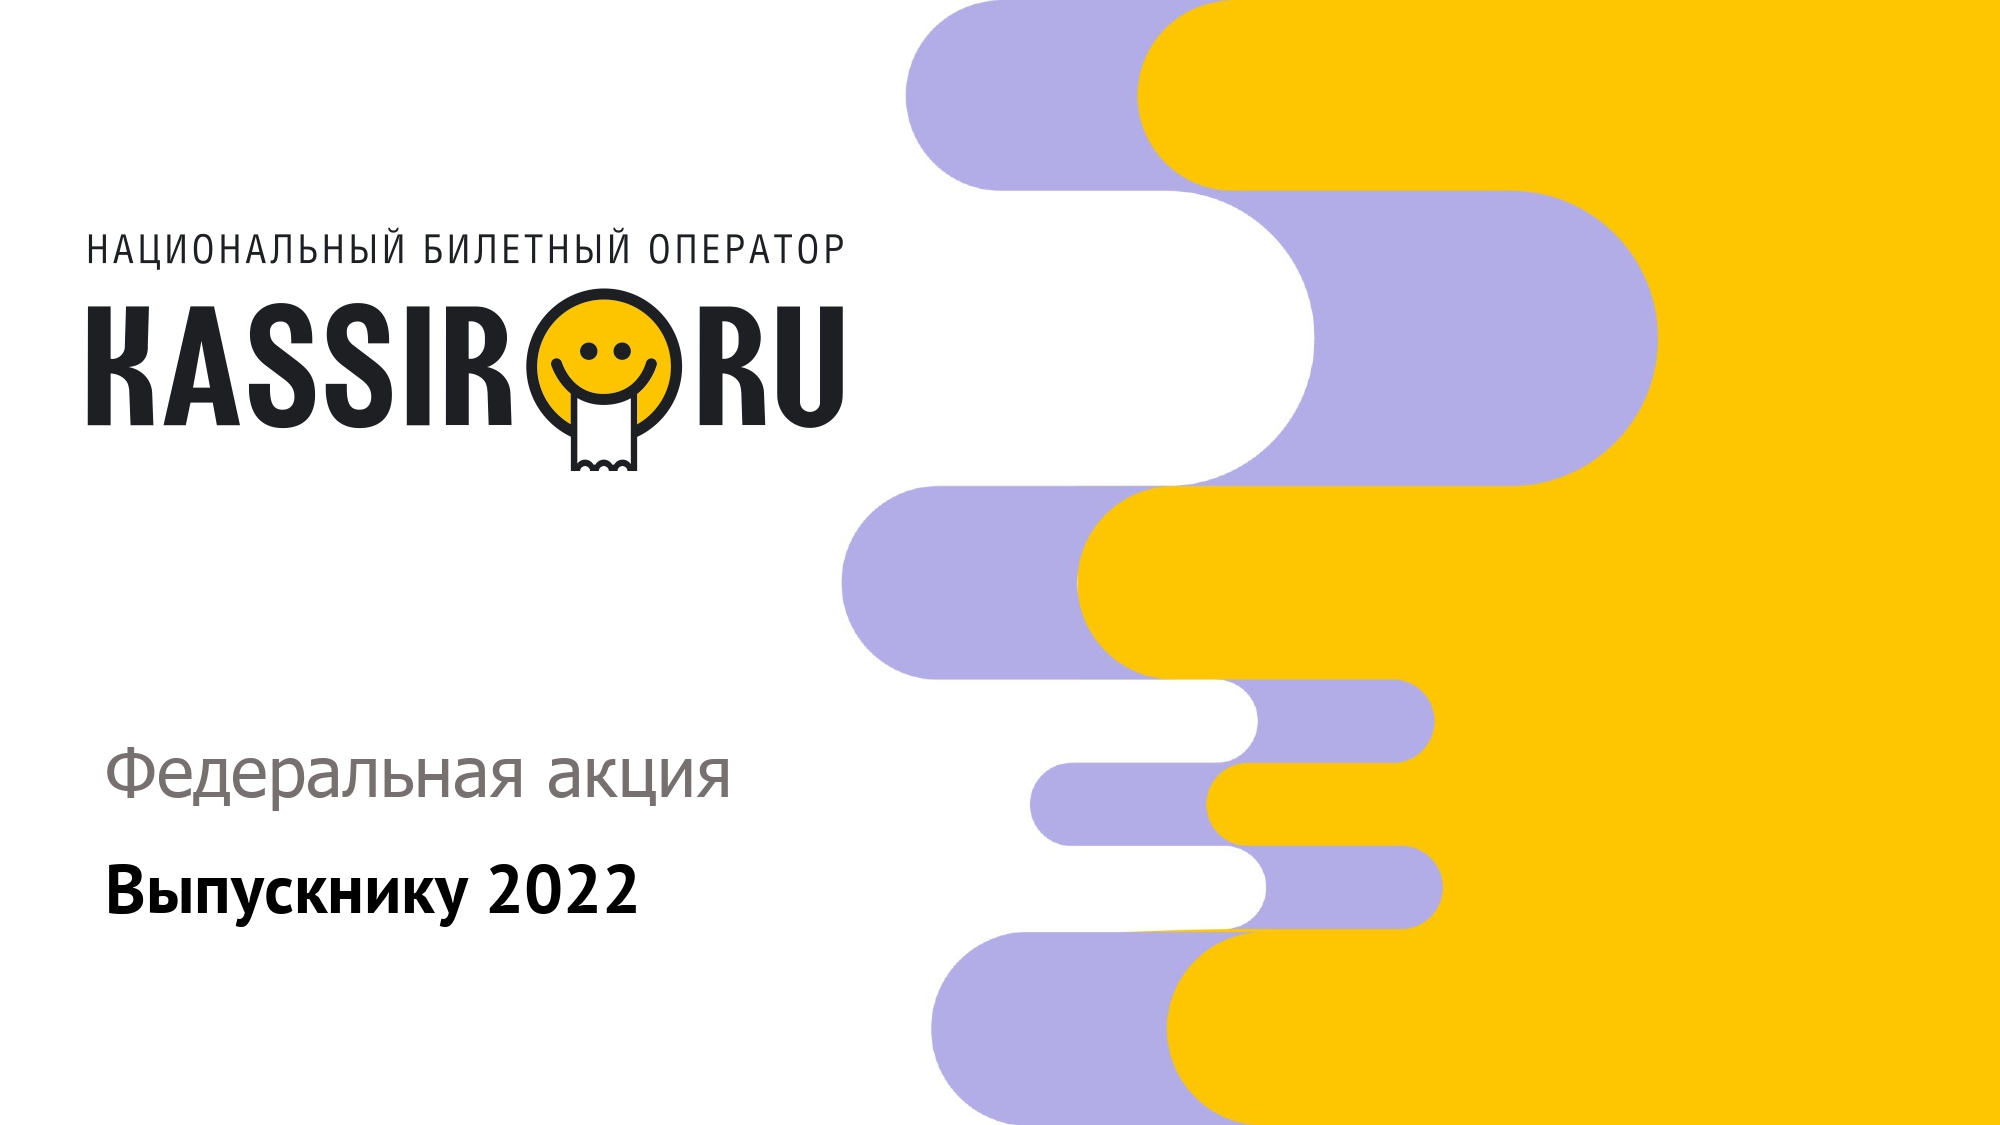 Центр народной культуры примет участие в федеральной акции «Выпускнику 2022»